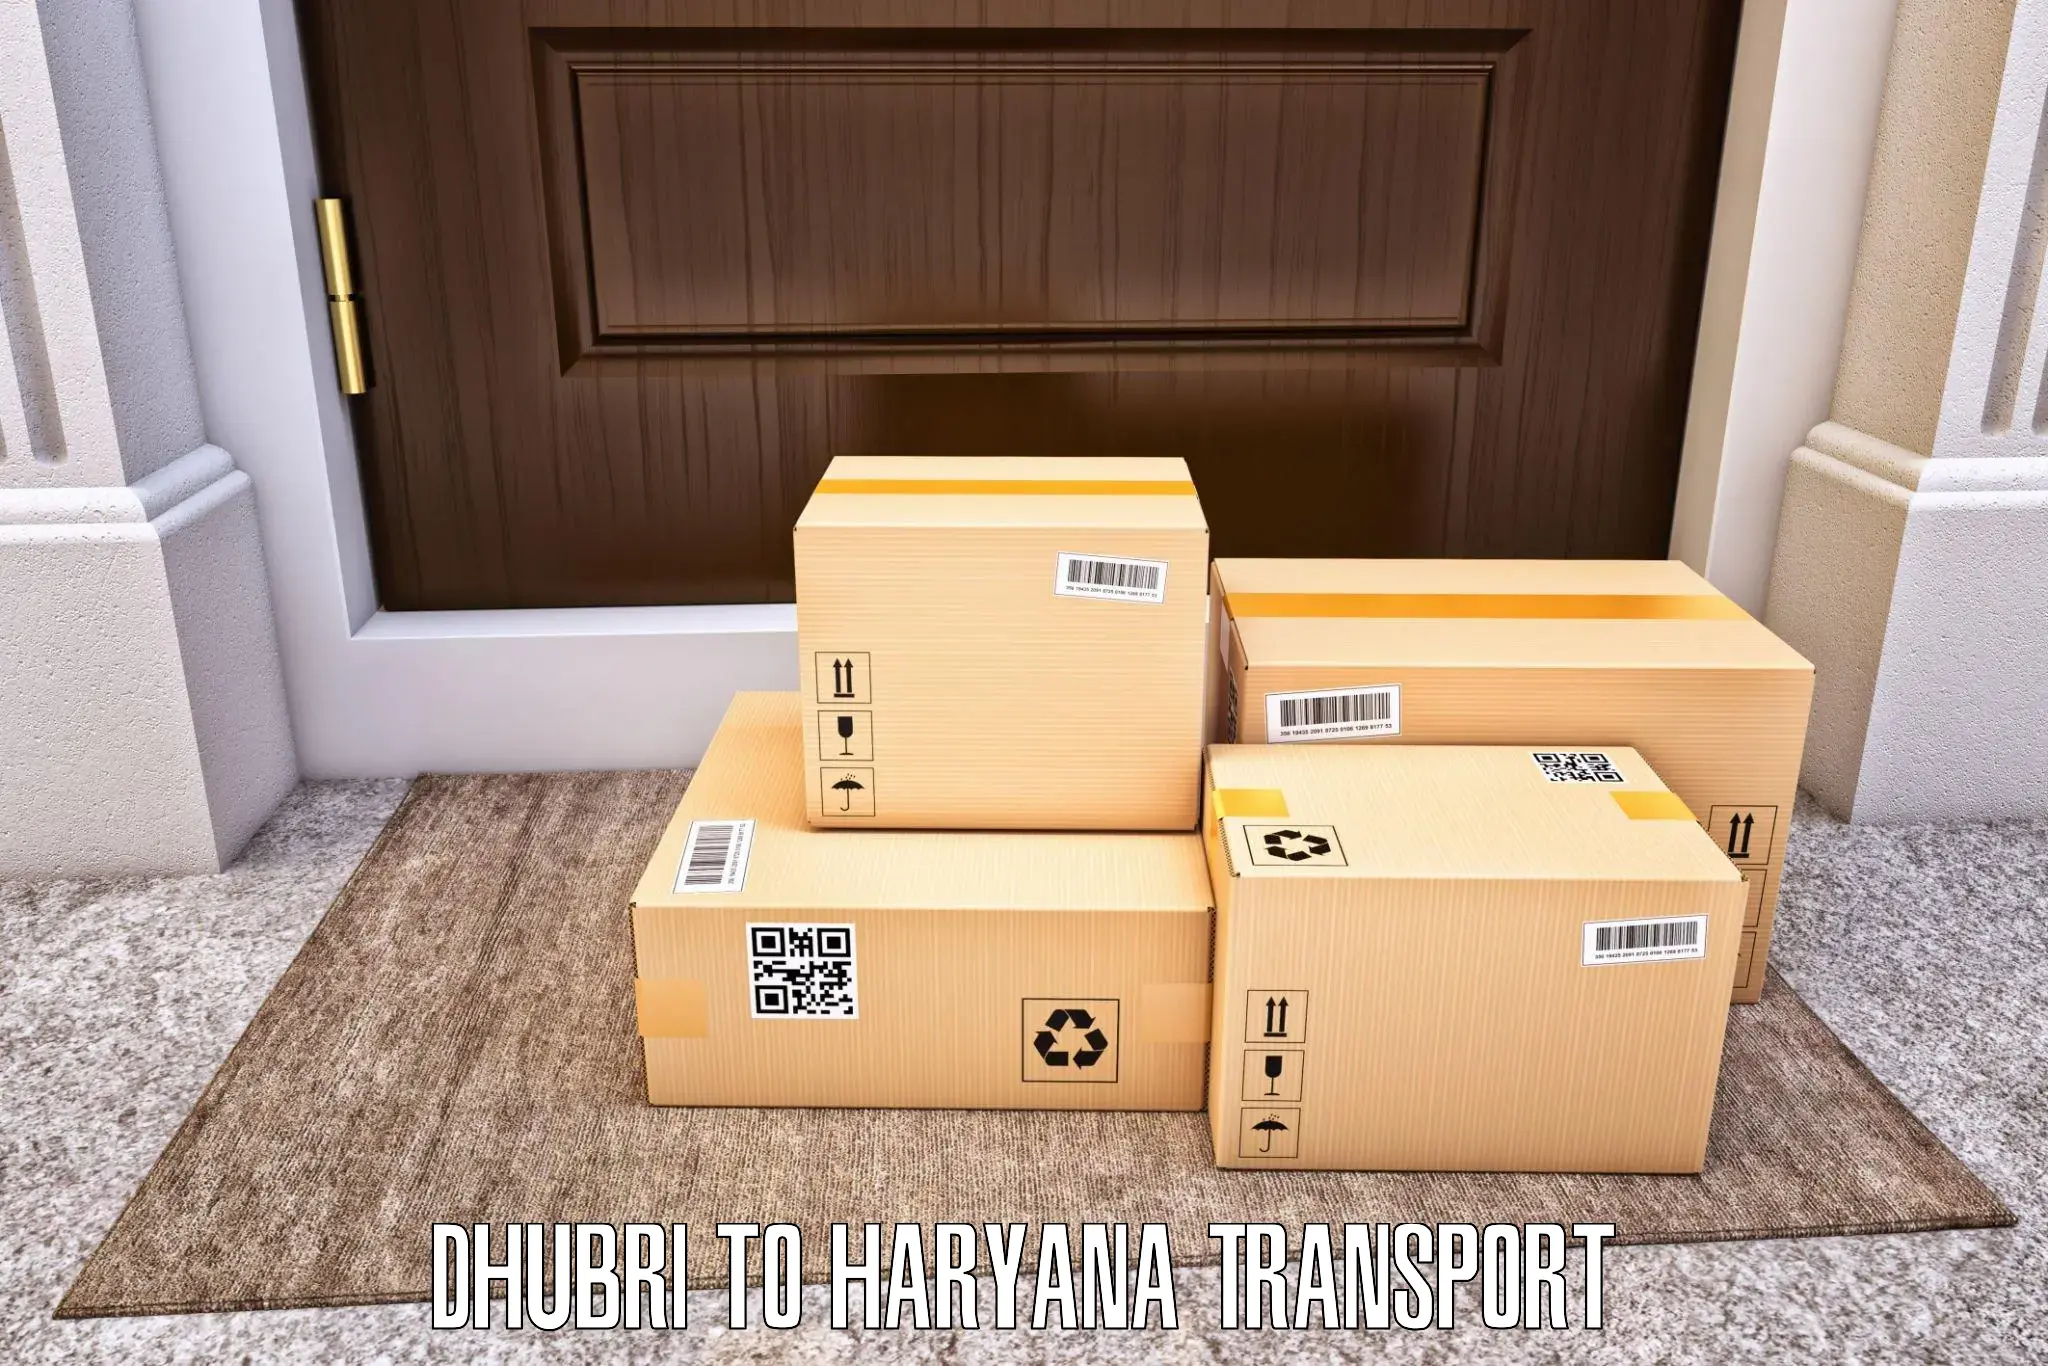 Logistics transportation services Dhubri to Kurukshetra